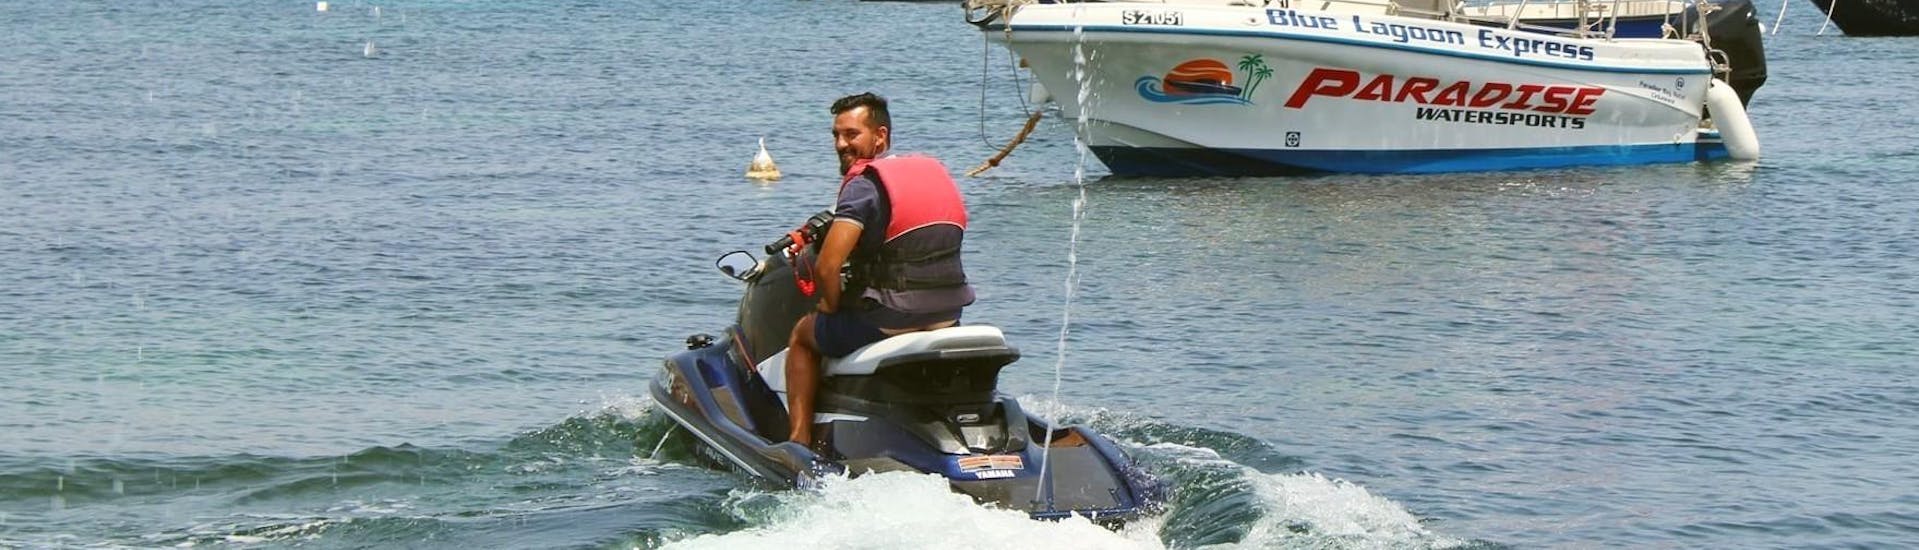 Man die een jetskisafari doet rond Comino en Gozo in Malta met Paradise Watersports.